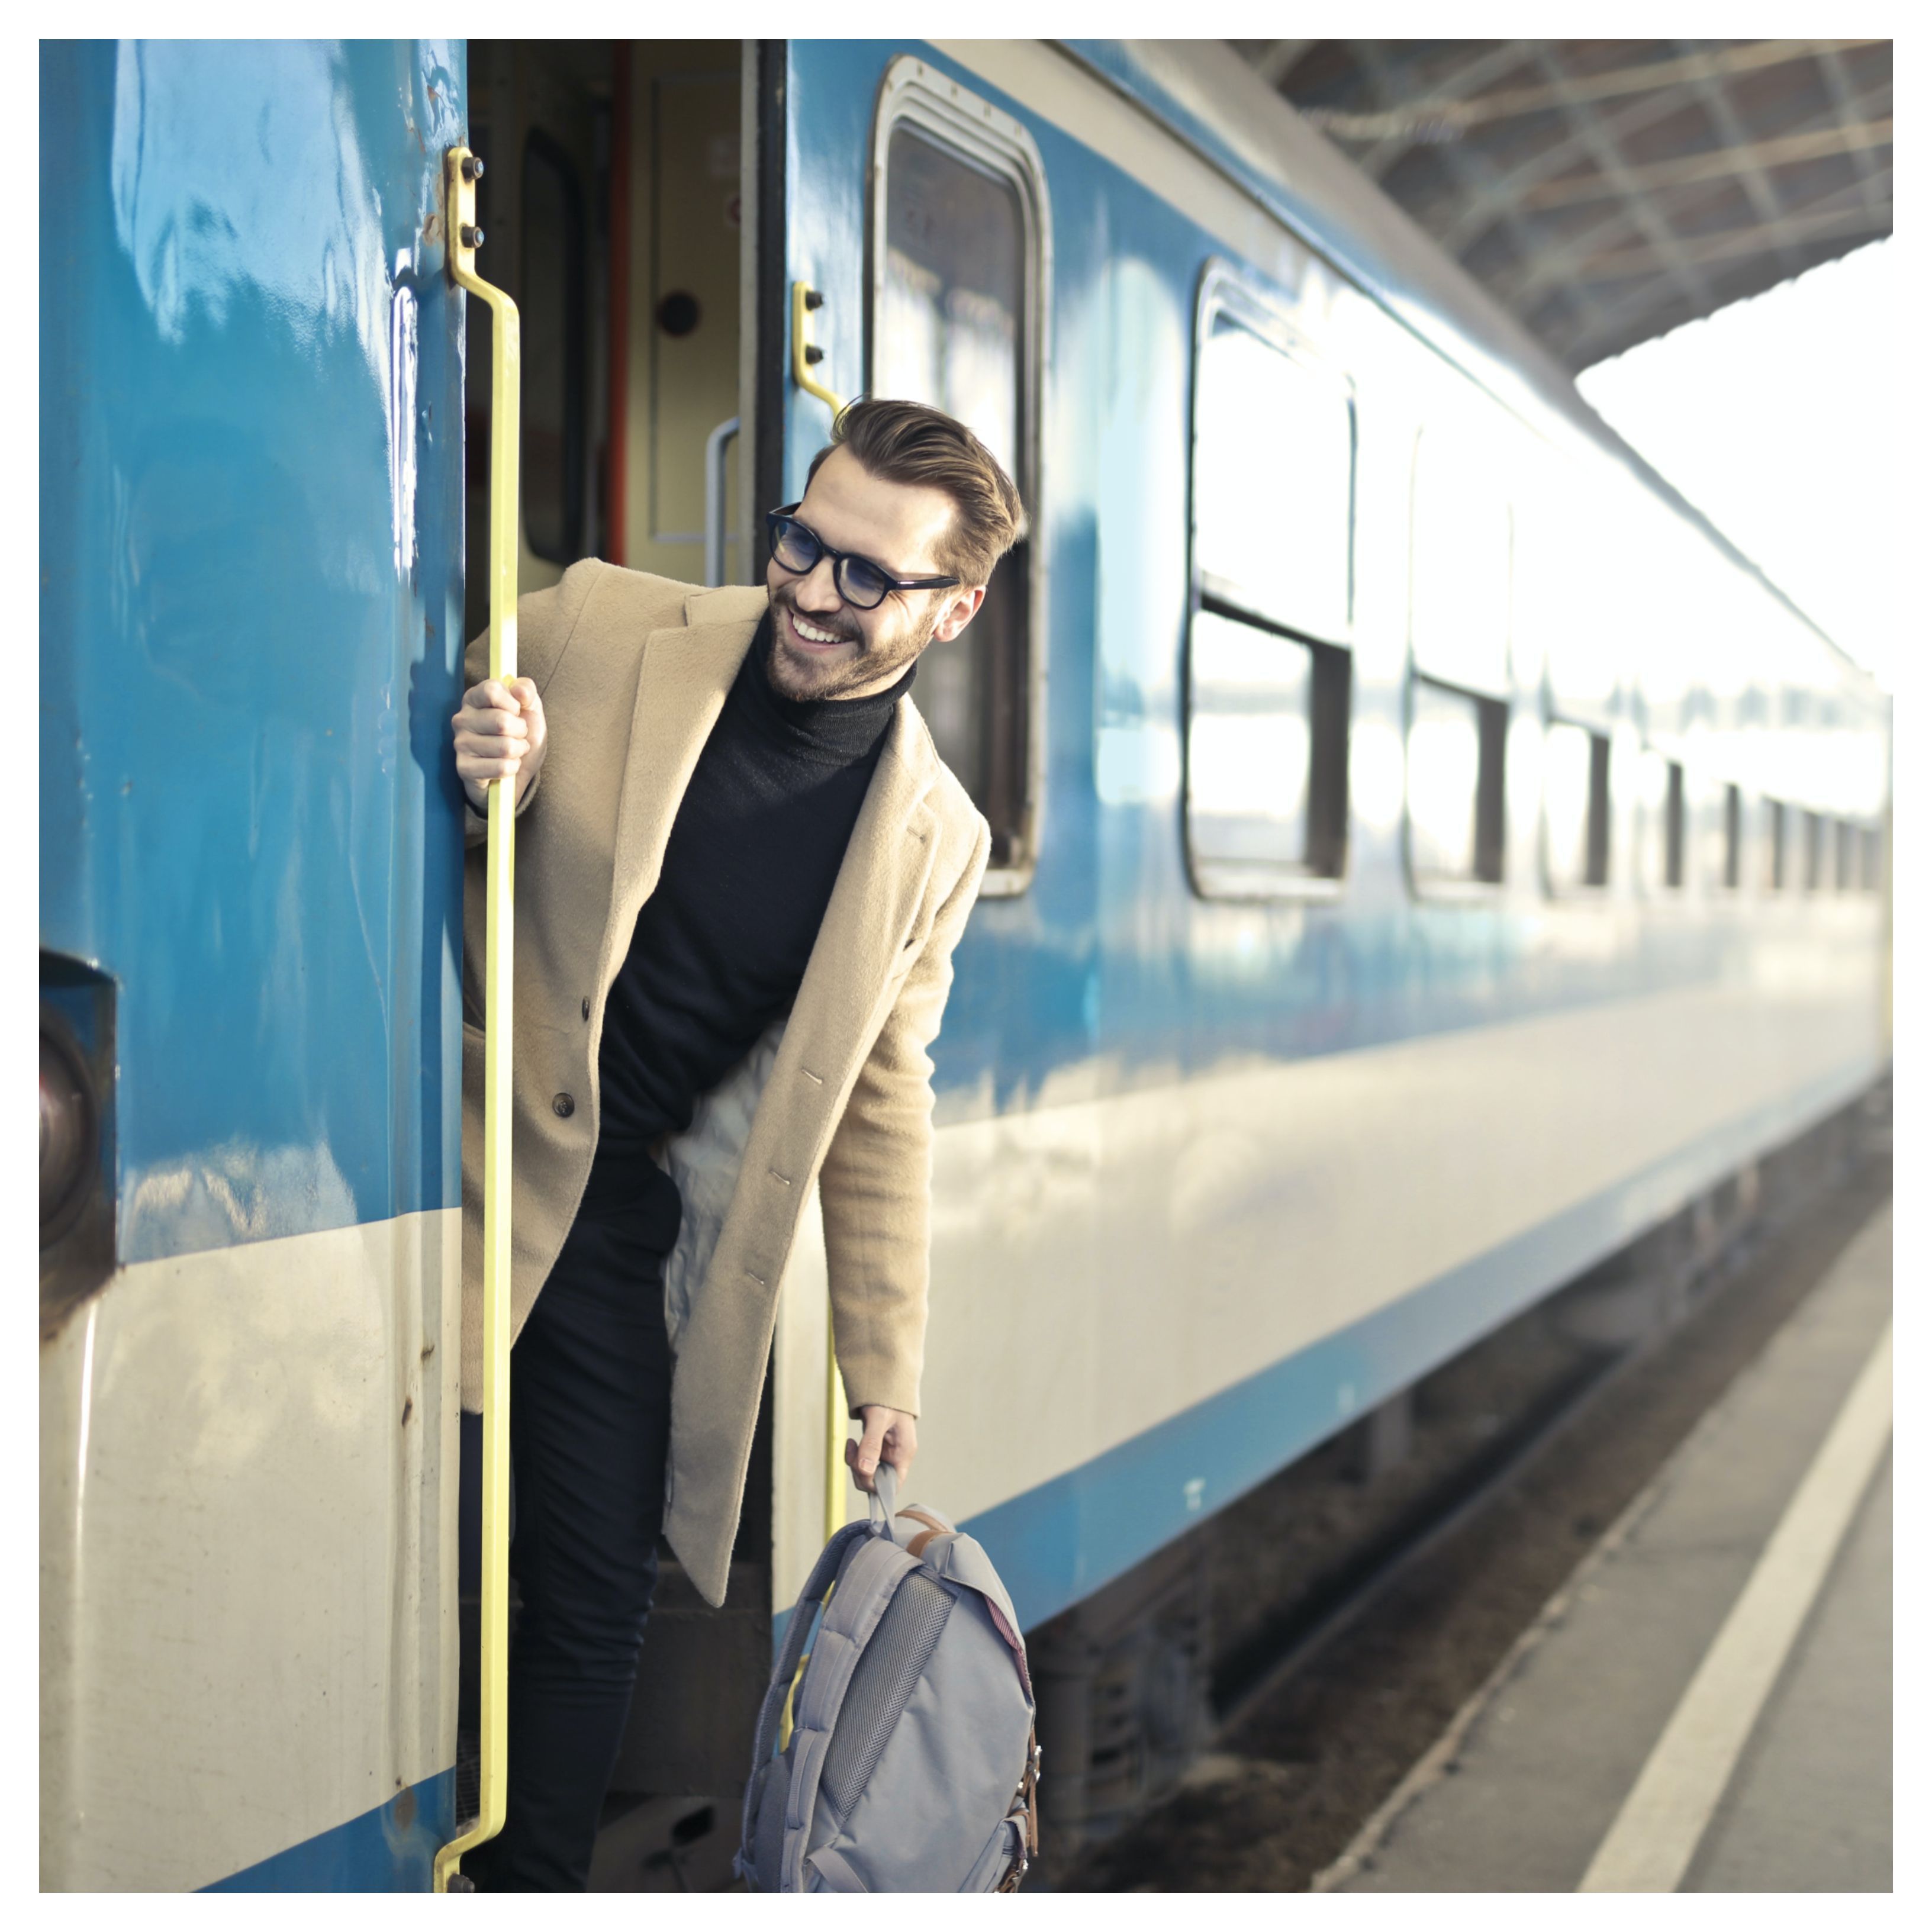 Un homme souriant se tient sur le marchepied d'un train bleu et blanc. Il tient un sac à dos gris à la main. Il porte un manteau beige et un col roulé nour. Il porte des lunettes de vue.